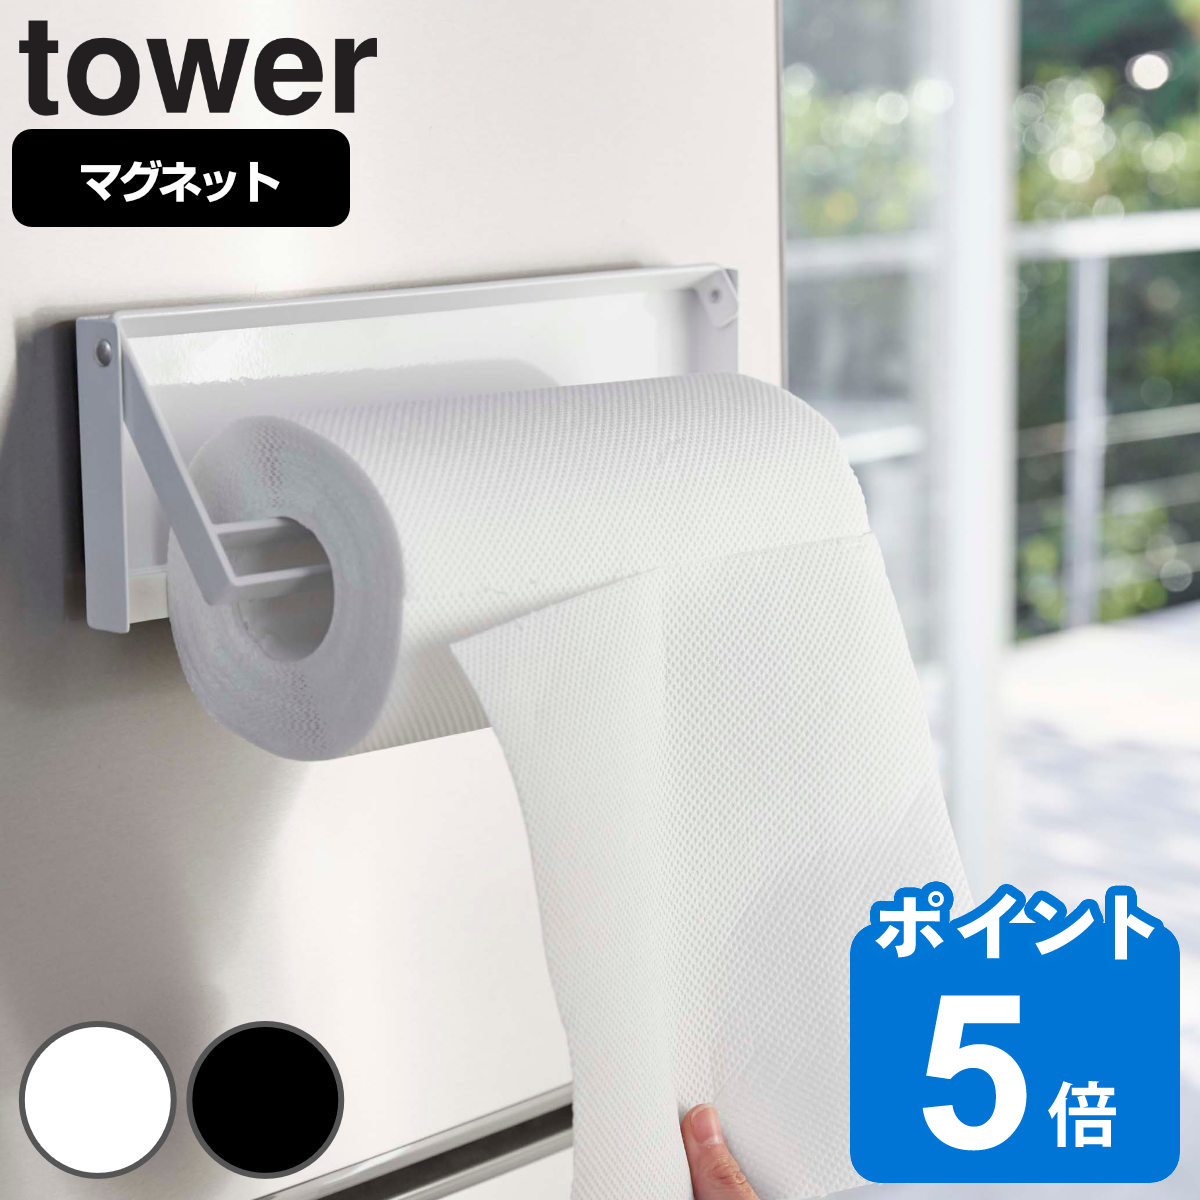 山崎実業 tower 片手でカットマグネットキッチンペーパーホルダー タワー